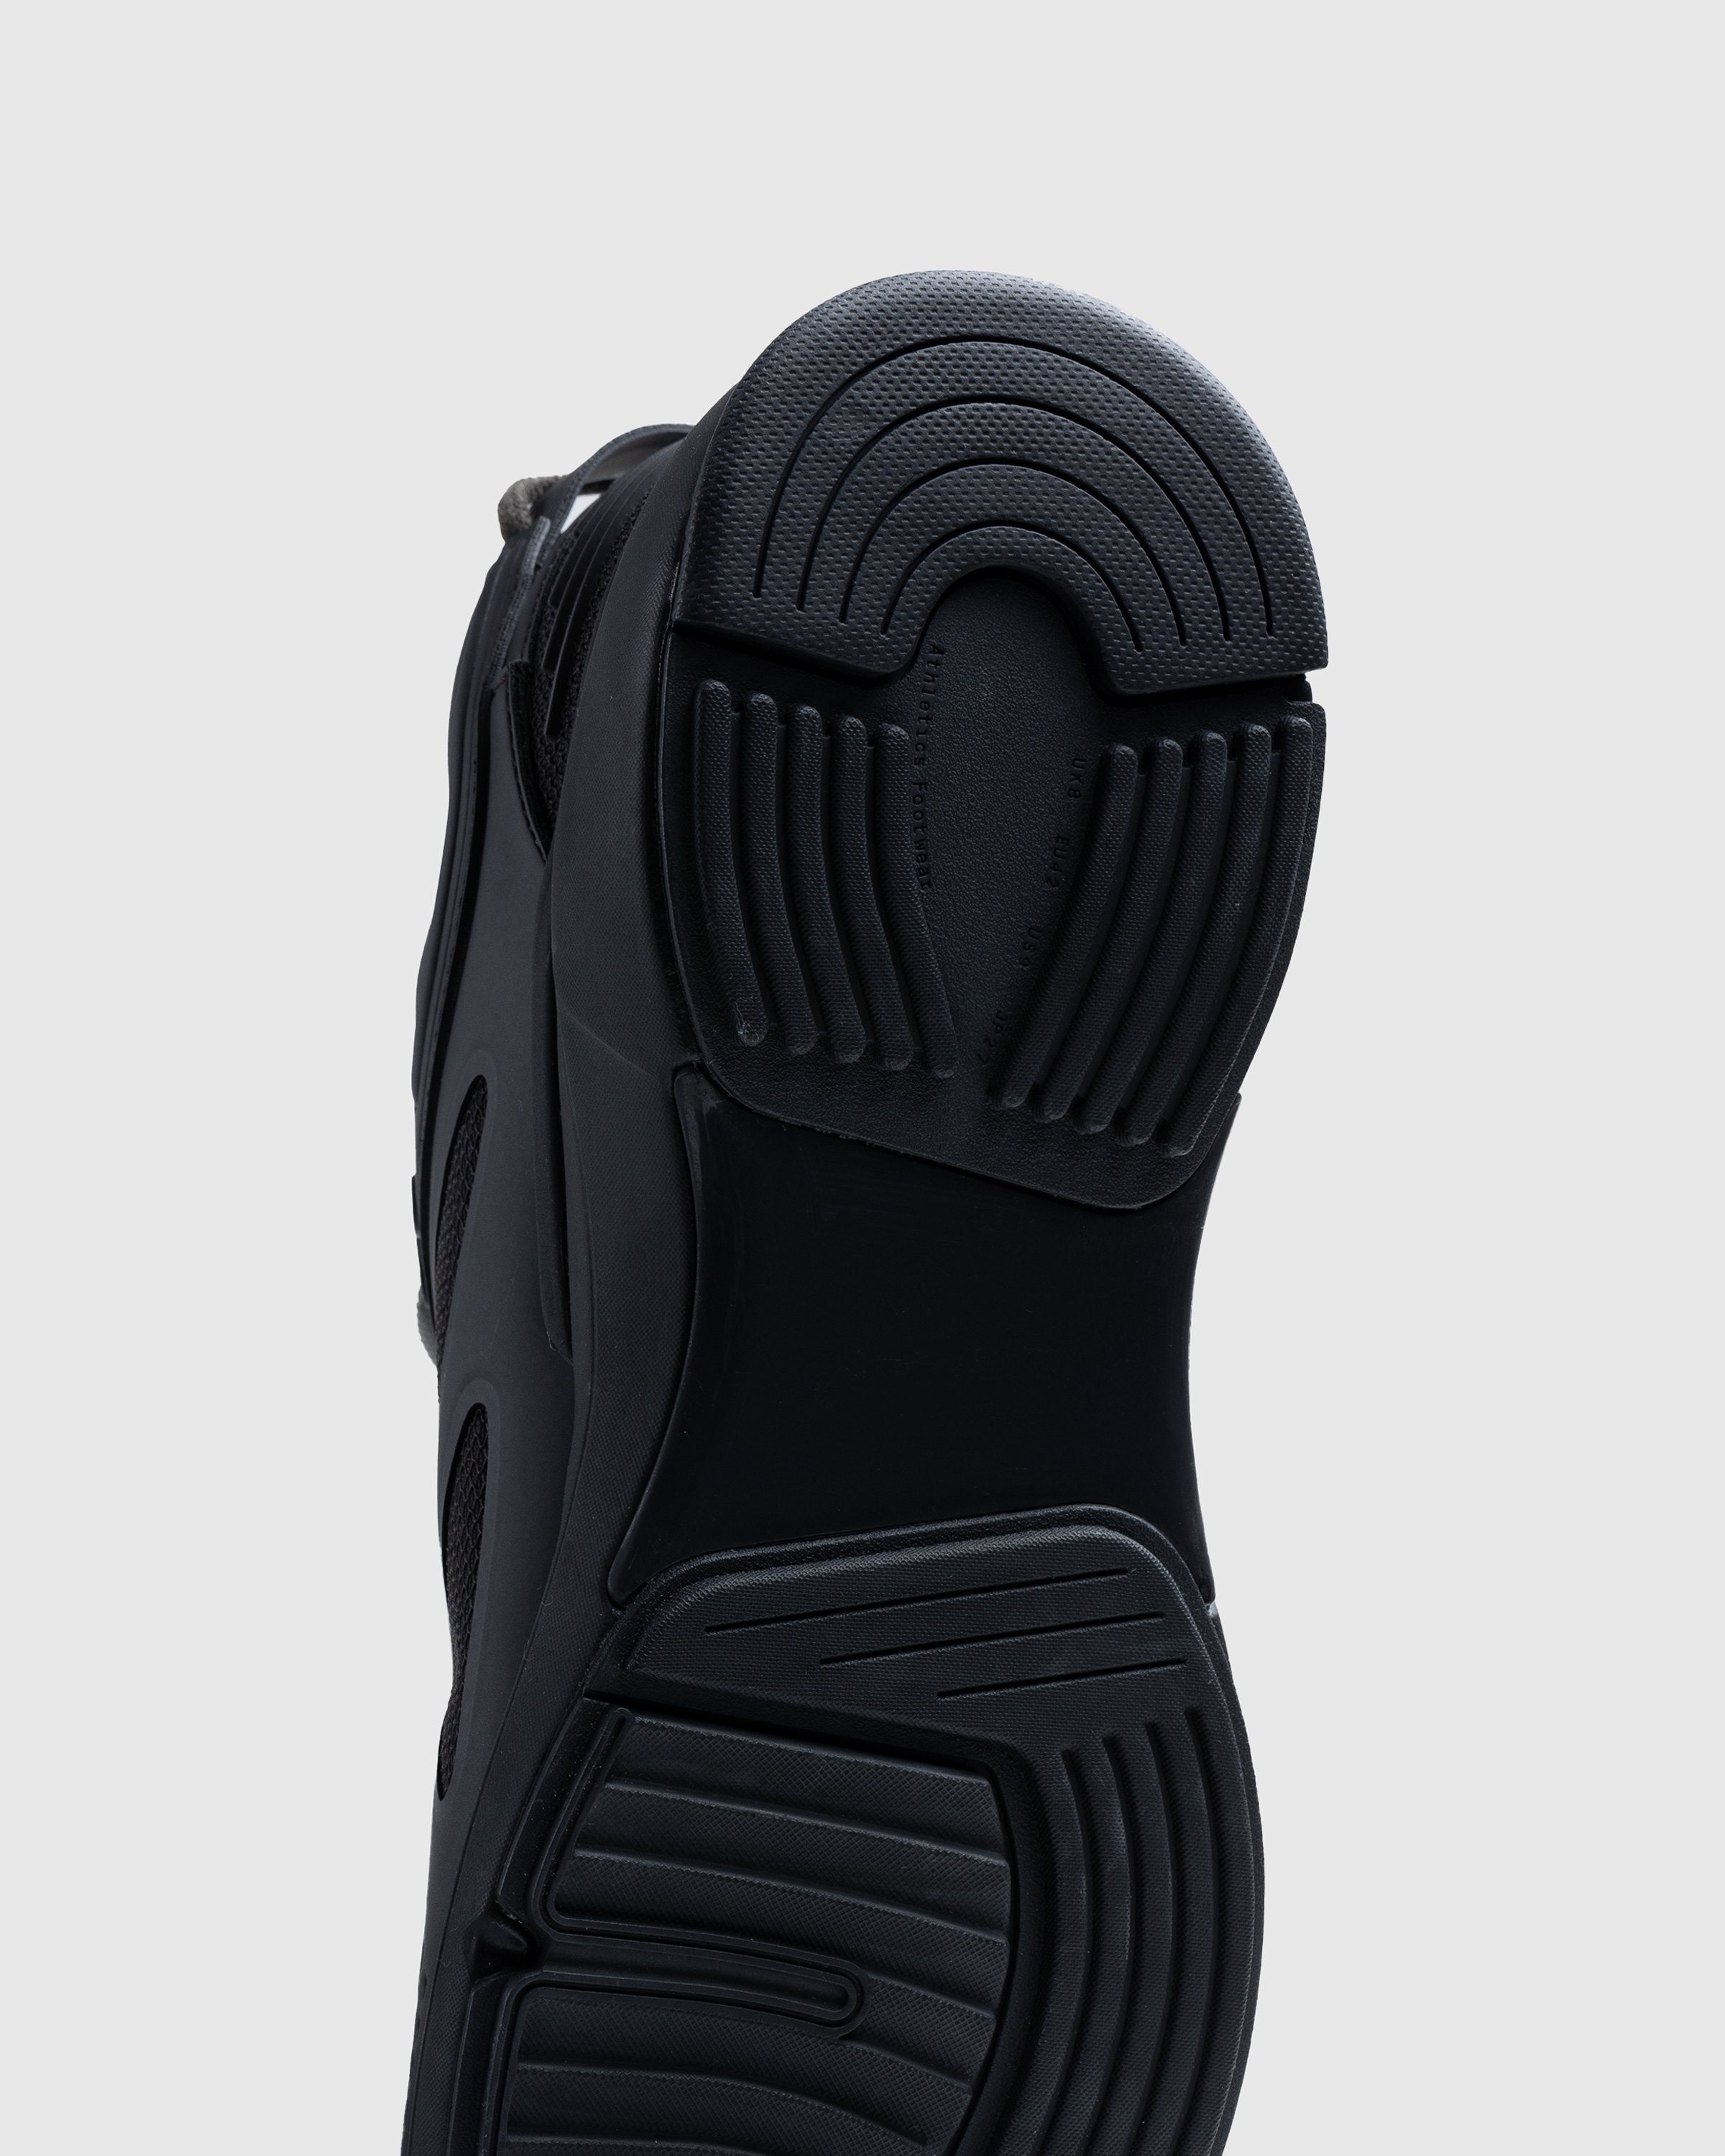 Athletics Footwear - One.2 Black - Footwear - Black - Image 5